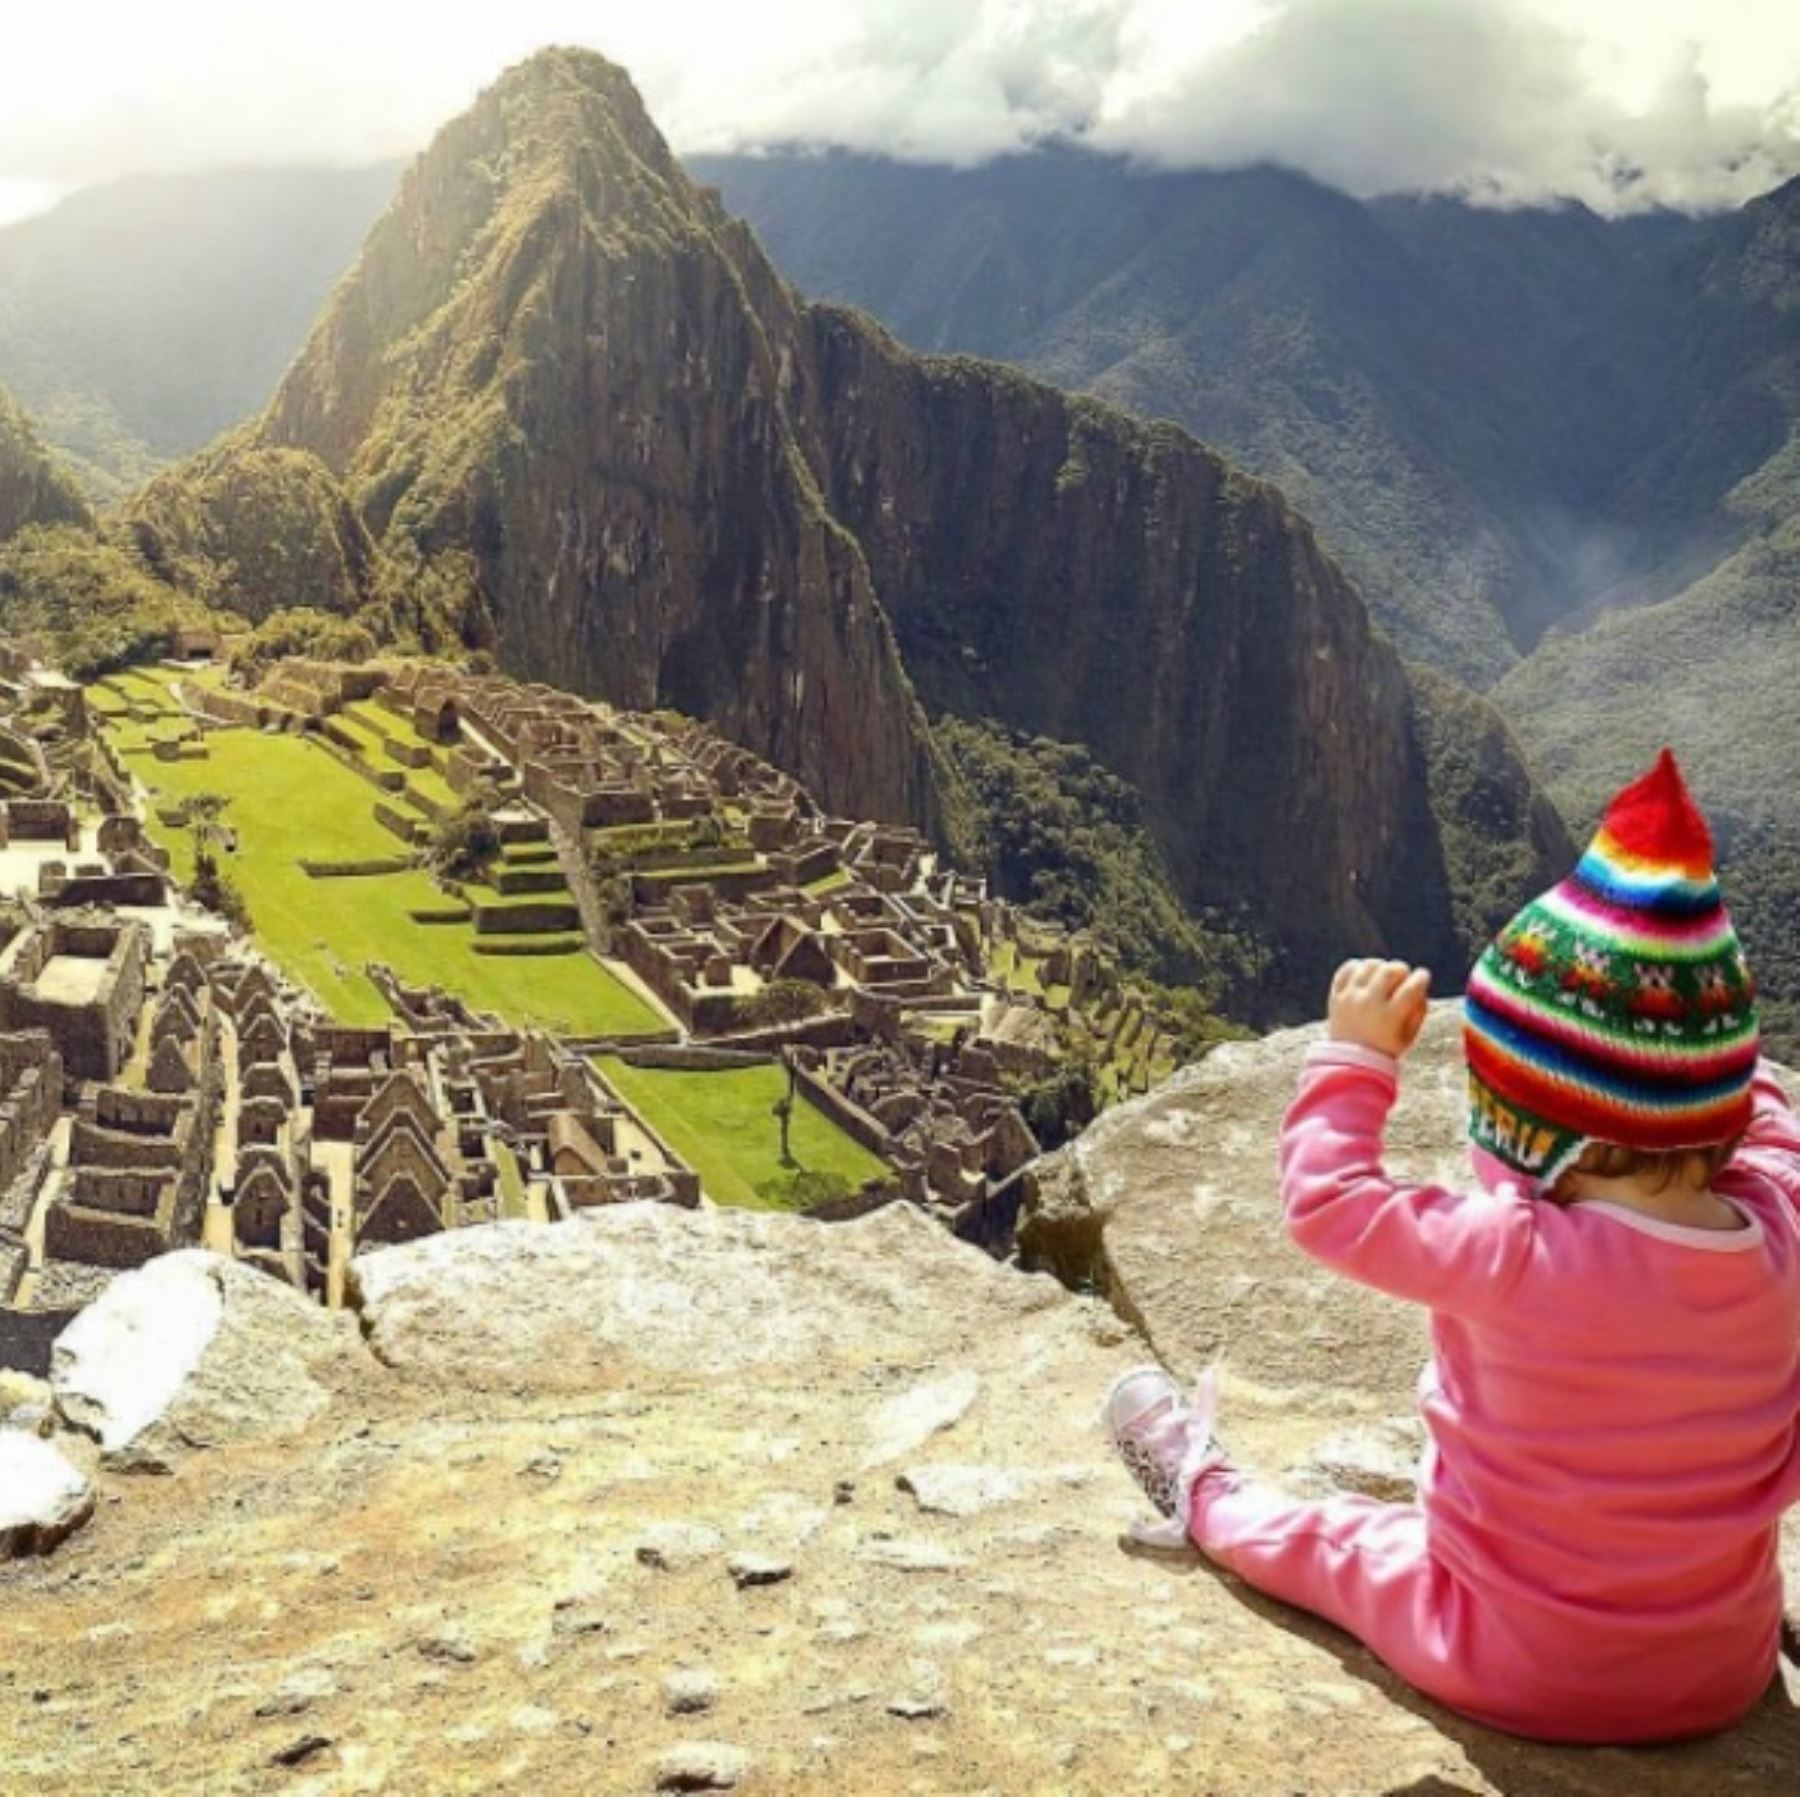 Machu Picchu, el principal destino turístico del Perú y una de las siete nuevas maravillas del mundo moderno, es el lugar más fotografiado de Sudamérica, reveló un reciente estudio realizado por la empresa de telefonía celular Sony Mobile en base a información de la red social Instagram. Foto: Instagram @joshrosdiphoto